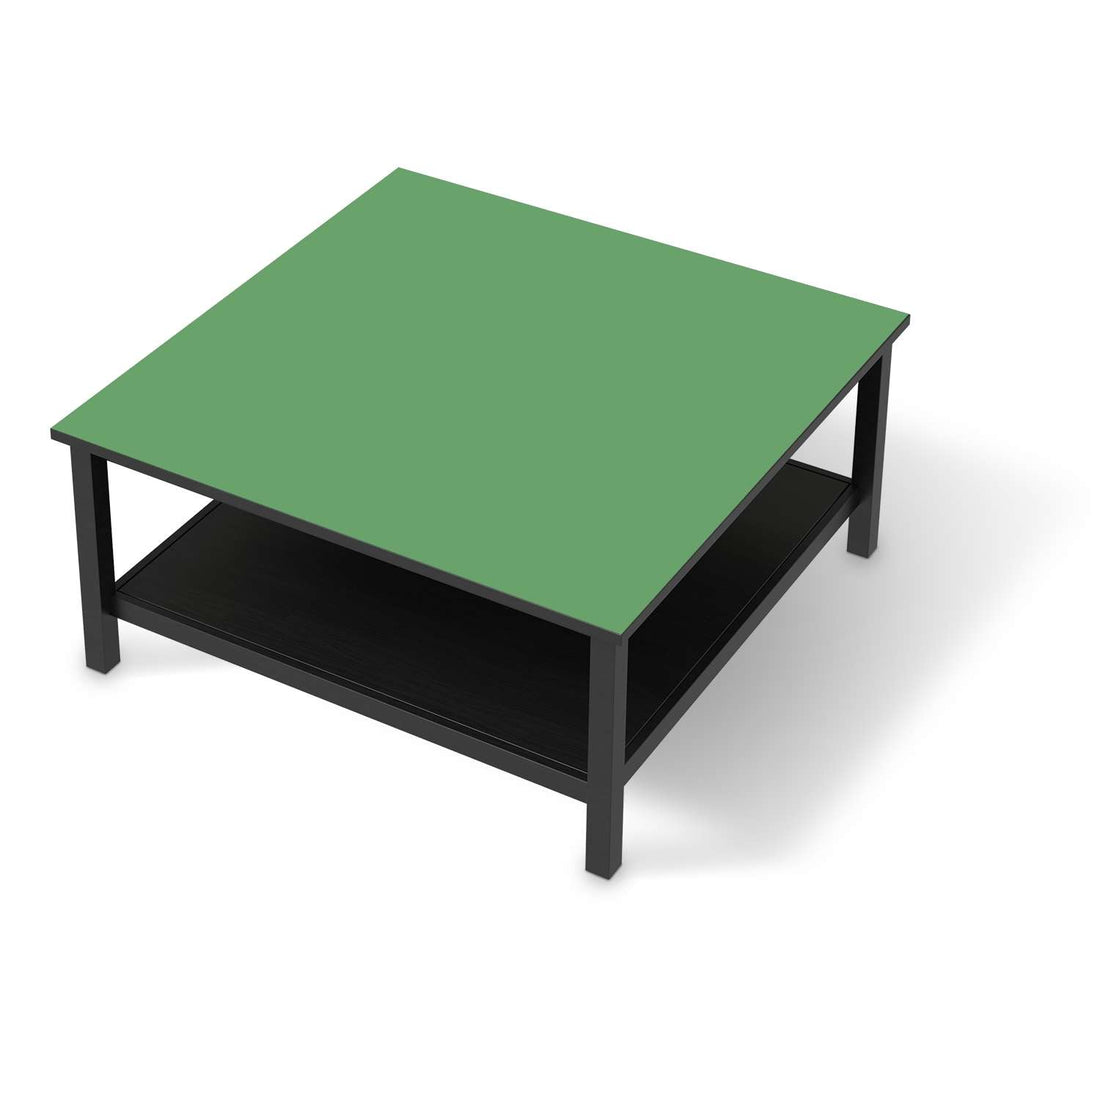 Klebefolie für Möbel Grün Light - IKEA Hemnes Couchtisch 90x90 cm - schwarz